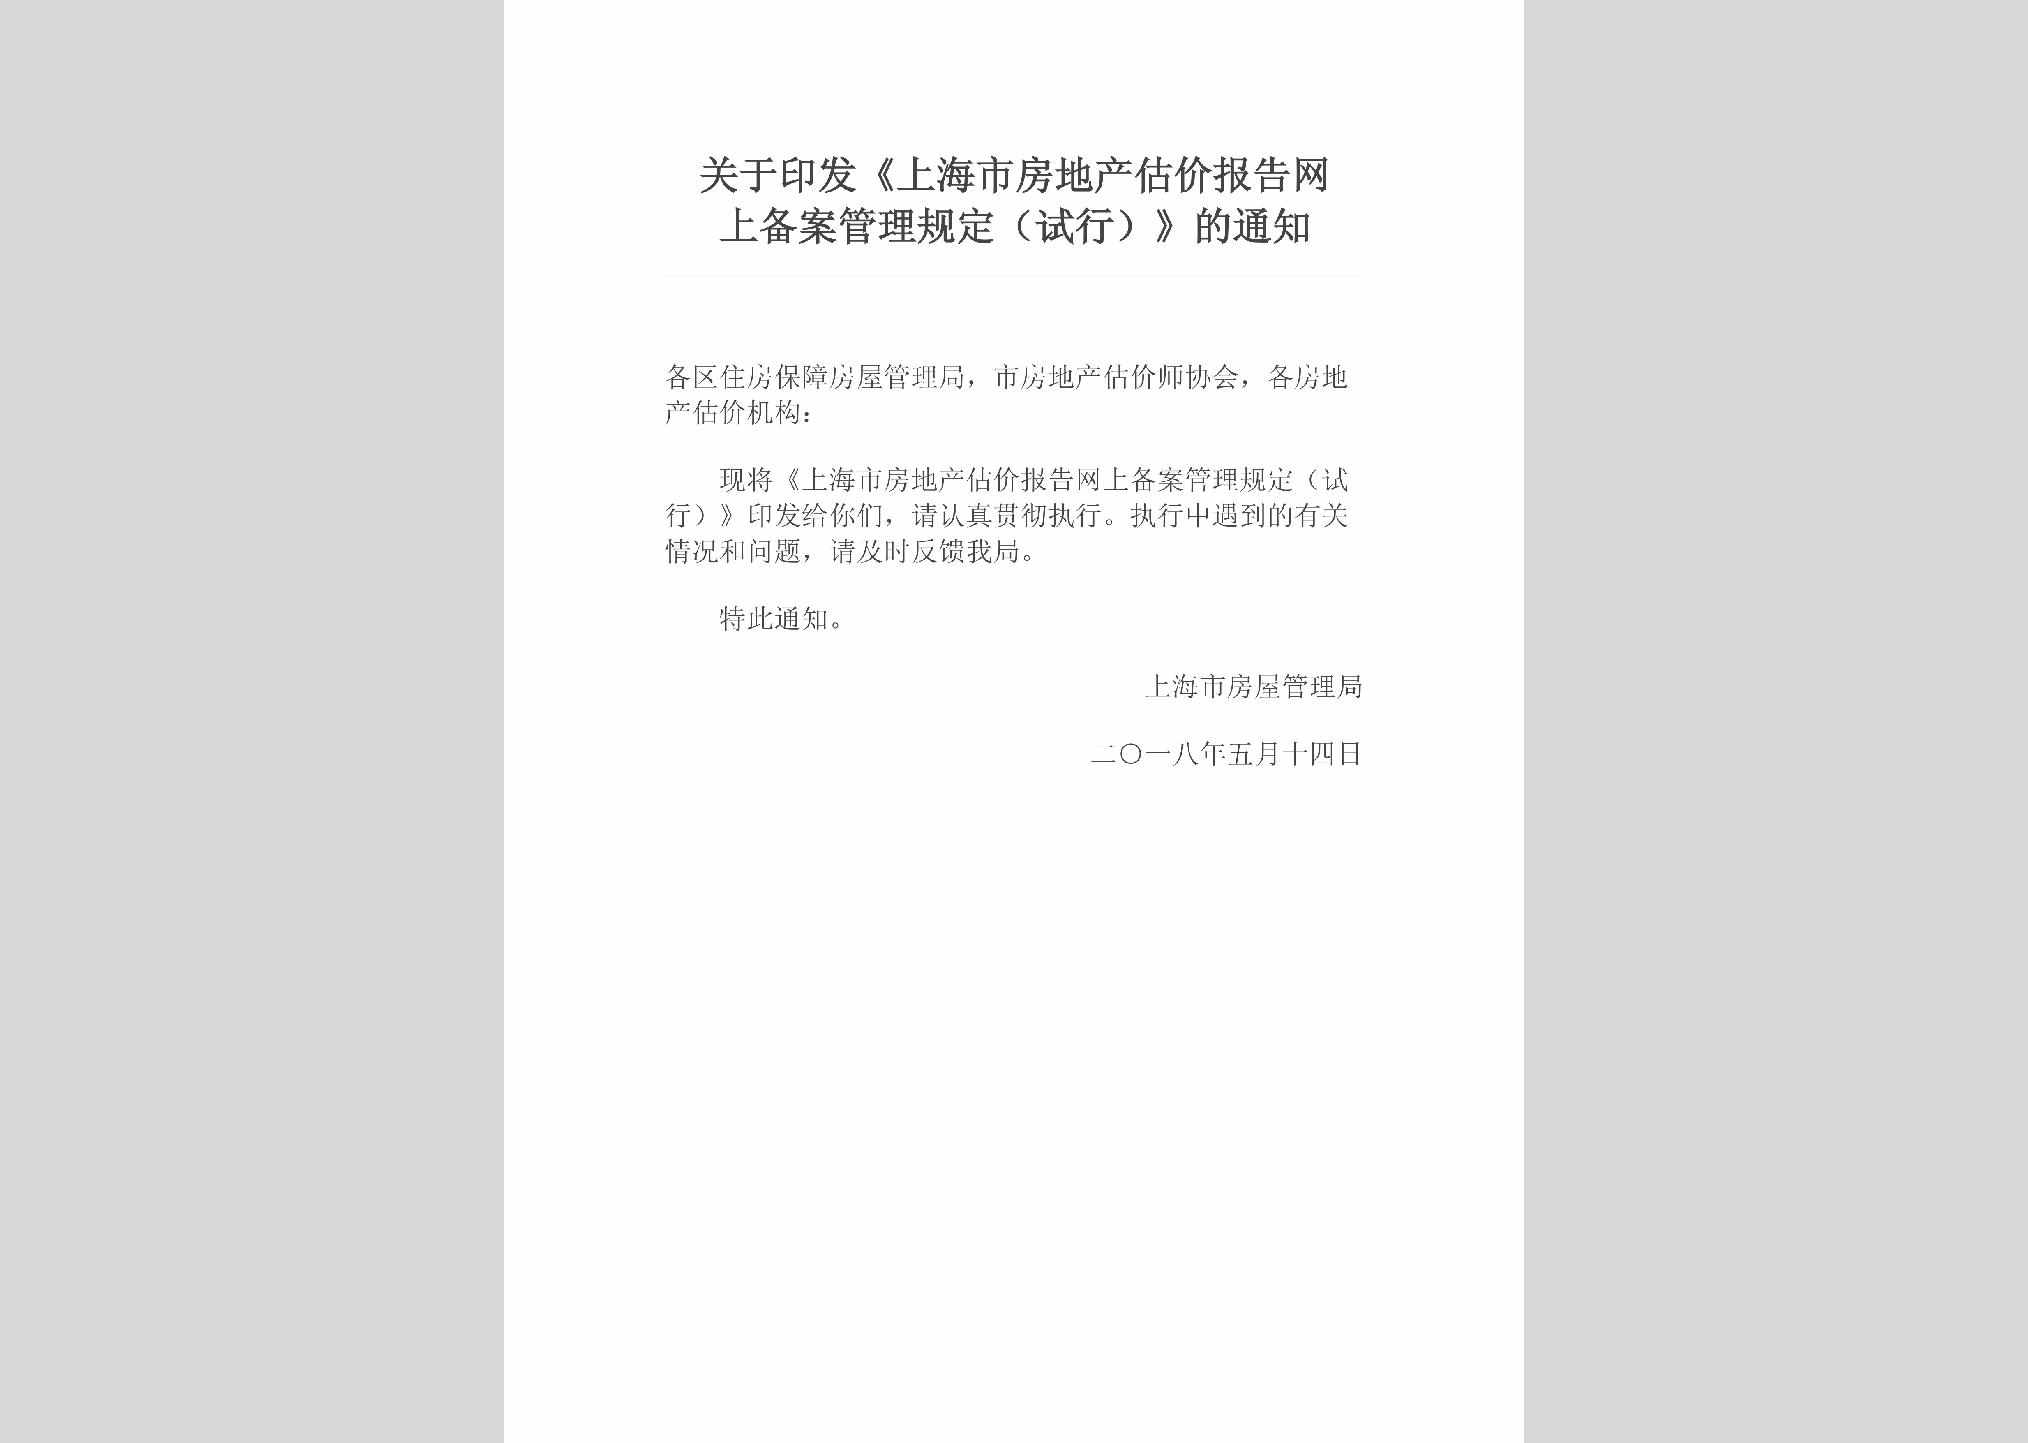 SH-FDCGJBG-2018：关于印发《上海市房地产估价报告网上备案管理规定（试行）》的通知